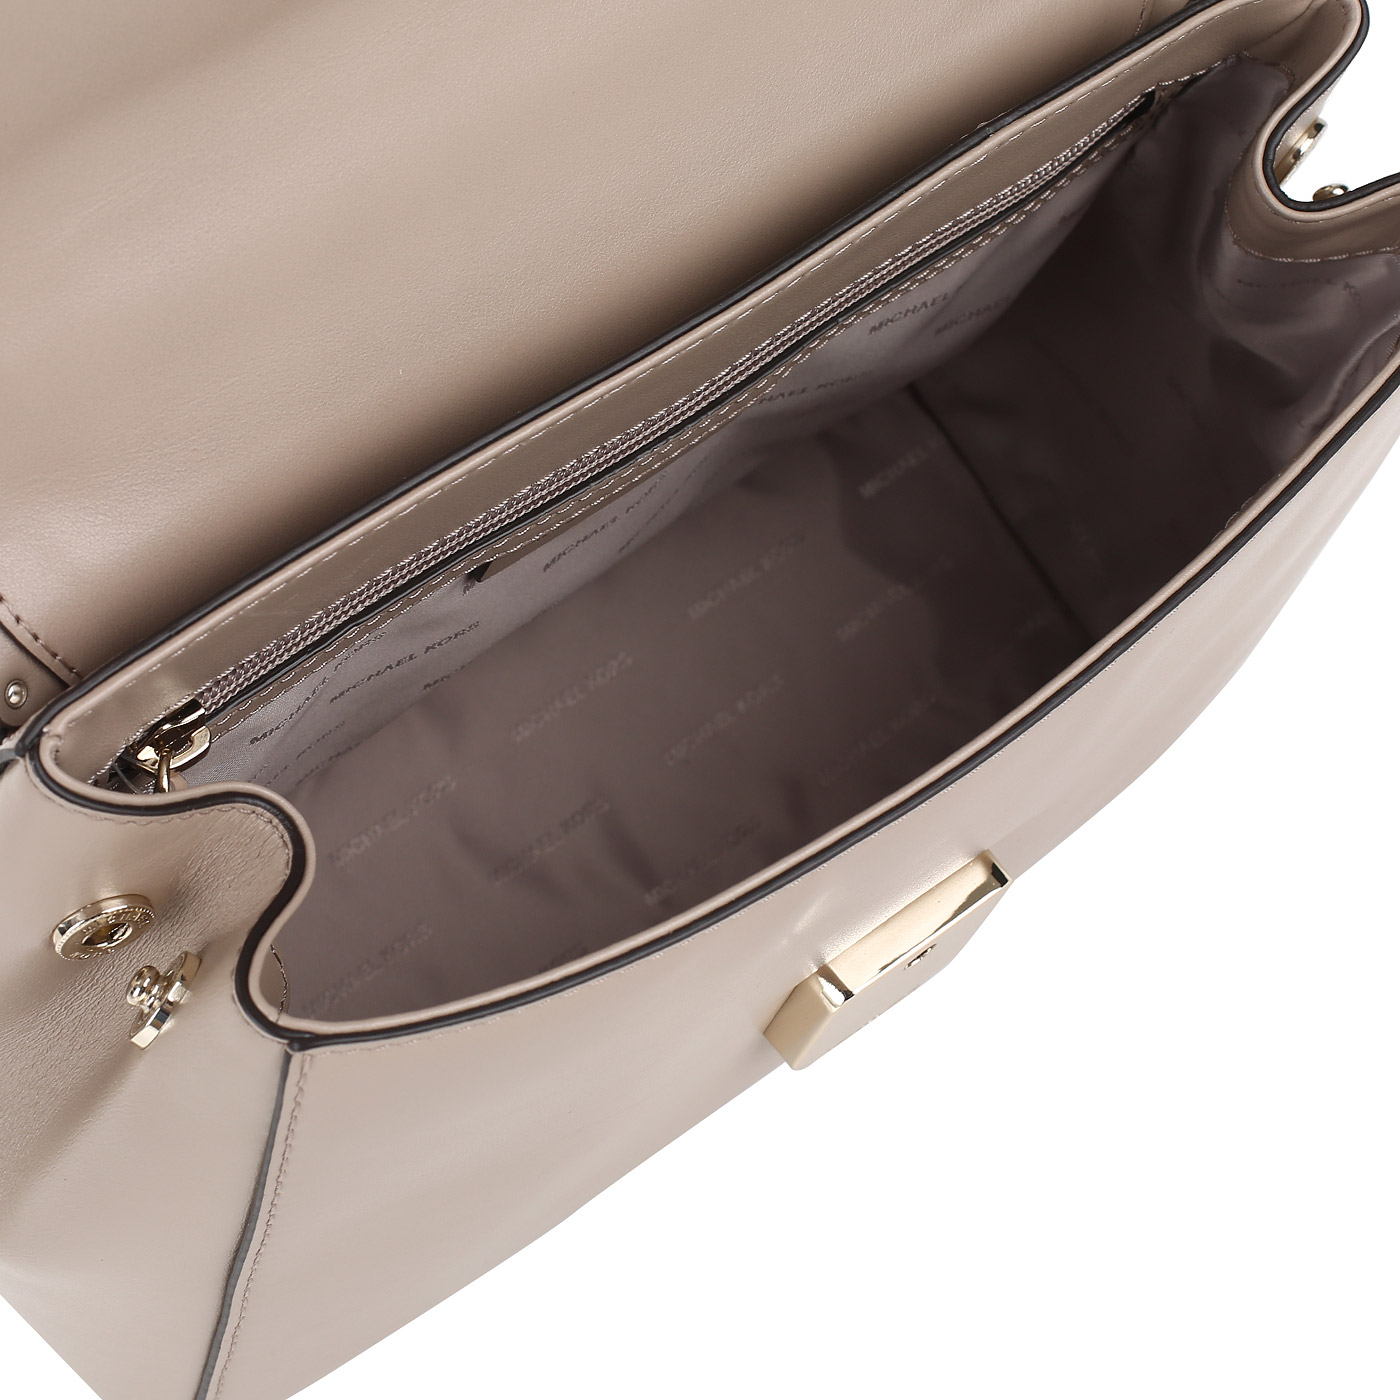 Кожаная сумка со съемным ремешком Michael Kors Ava